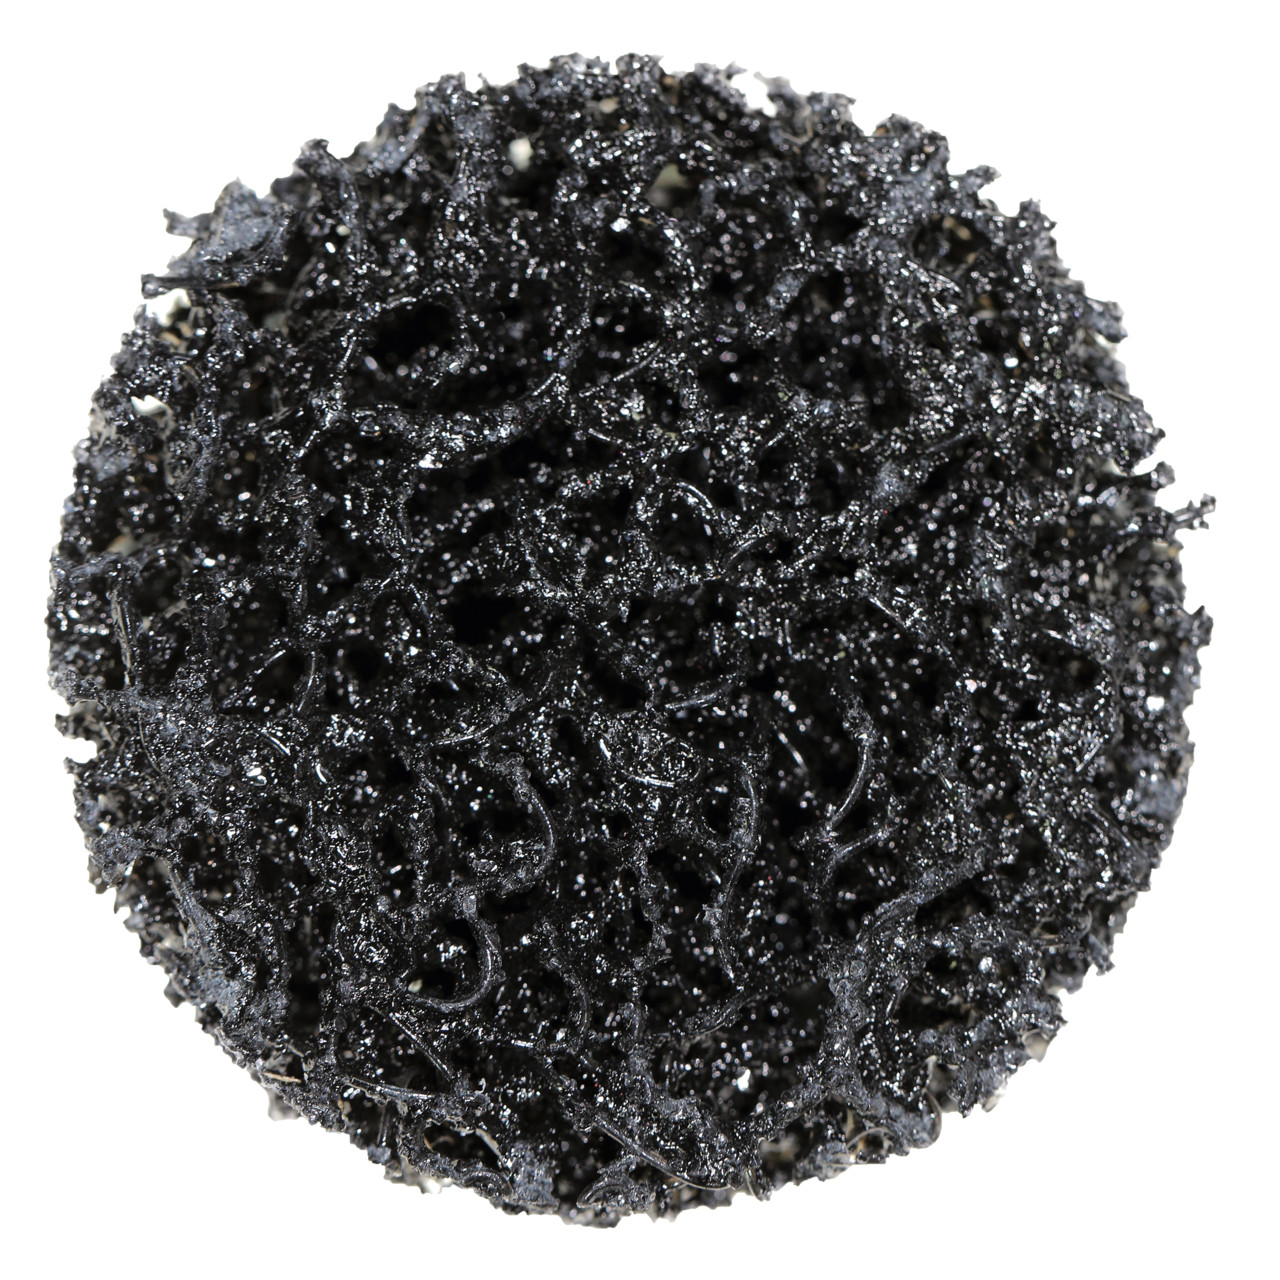 Tyrolit Disque de nettoyage grossier Dimension 75xR Pour l'acier, l'acier inoxydable et le PVC, C GROB, forme : QDISC, art. 112603